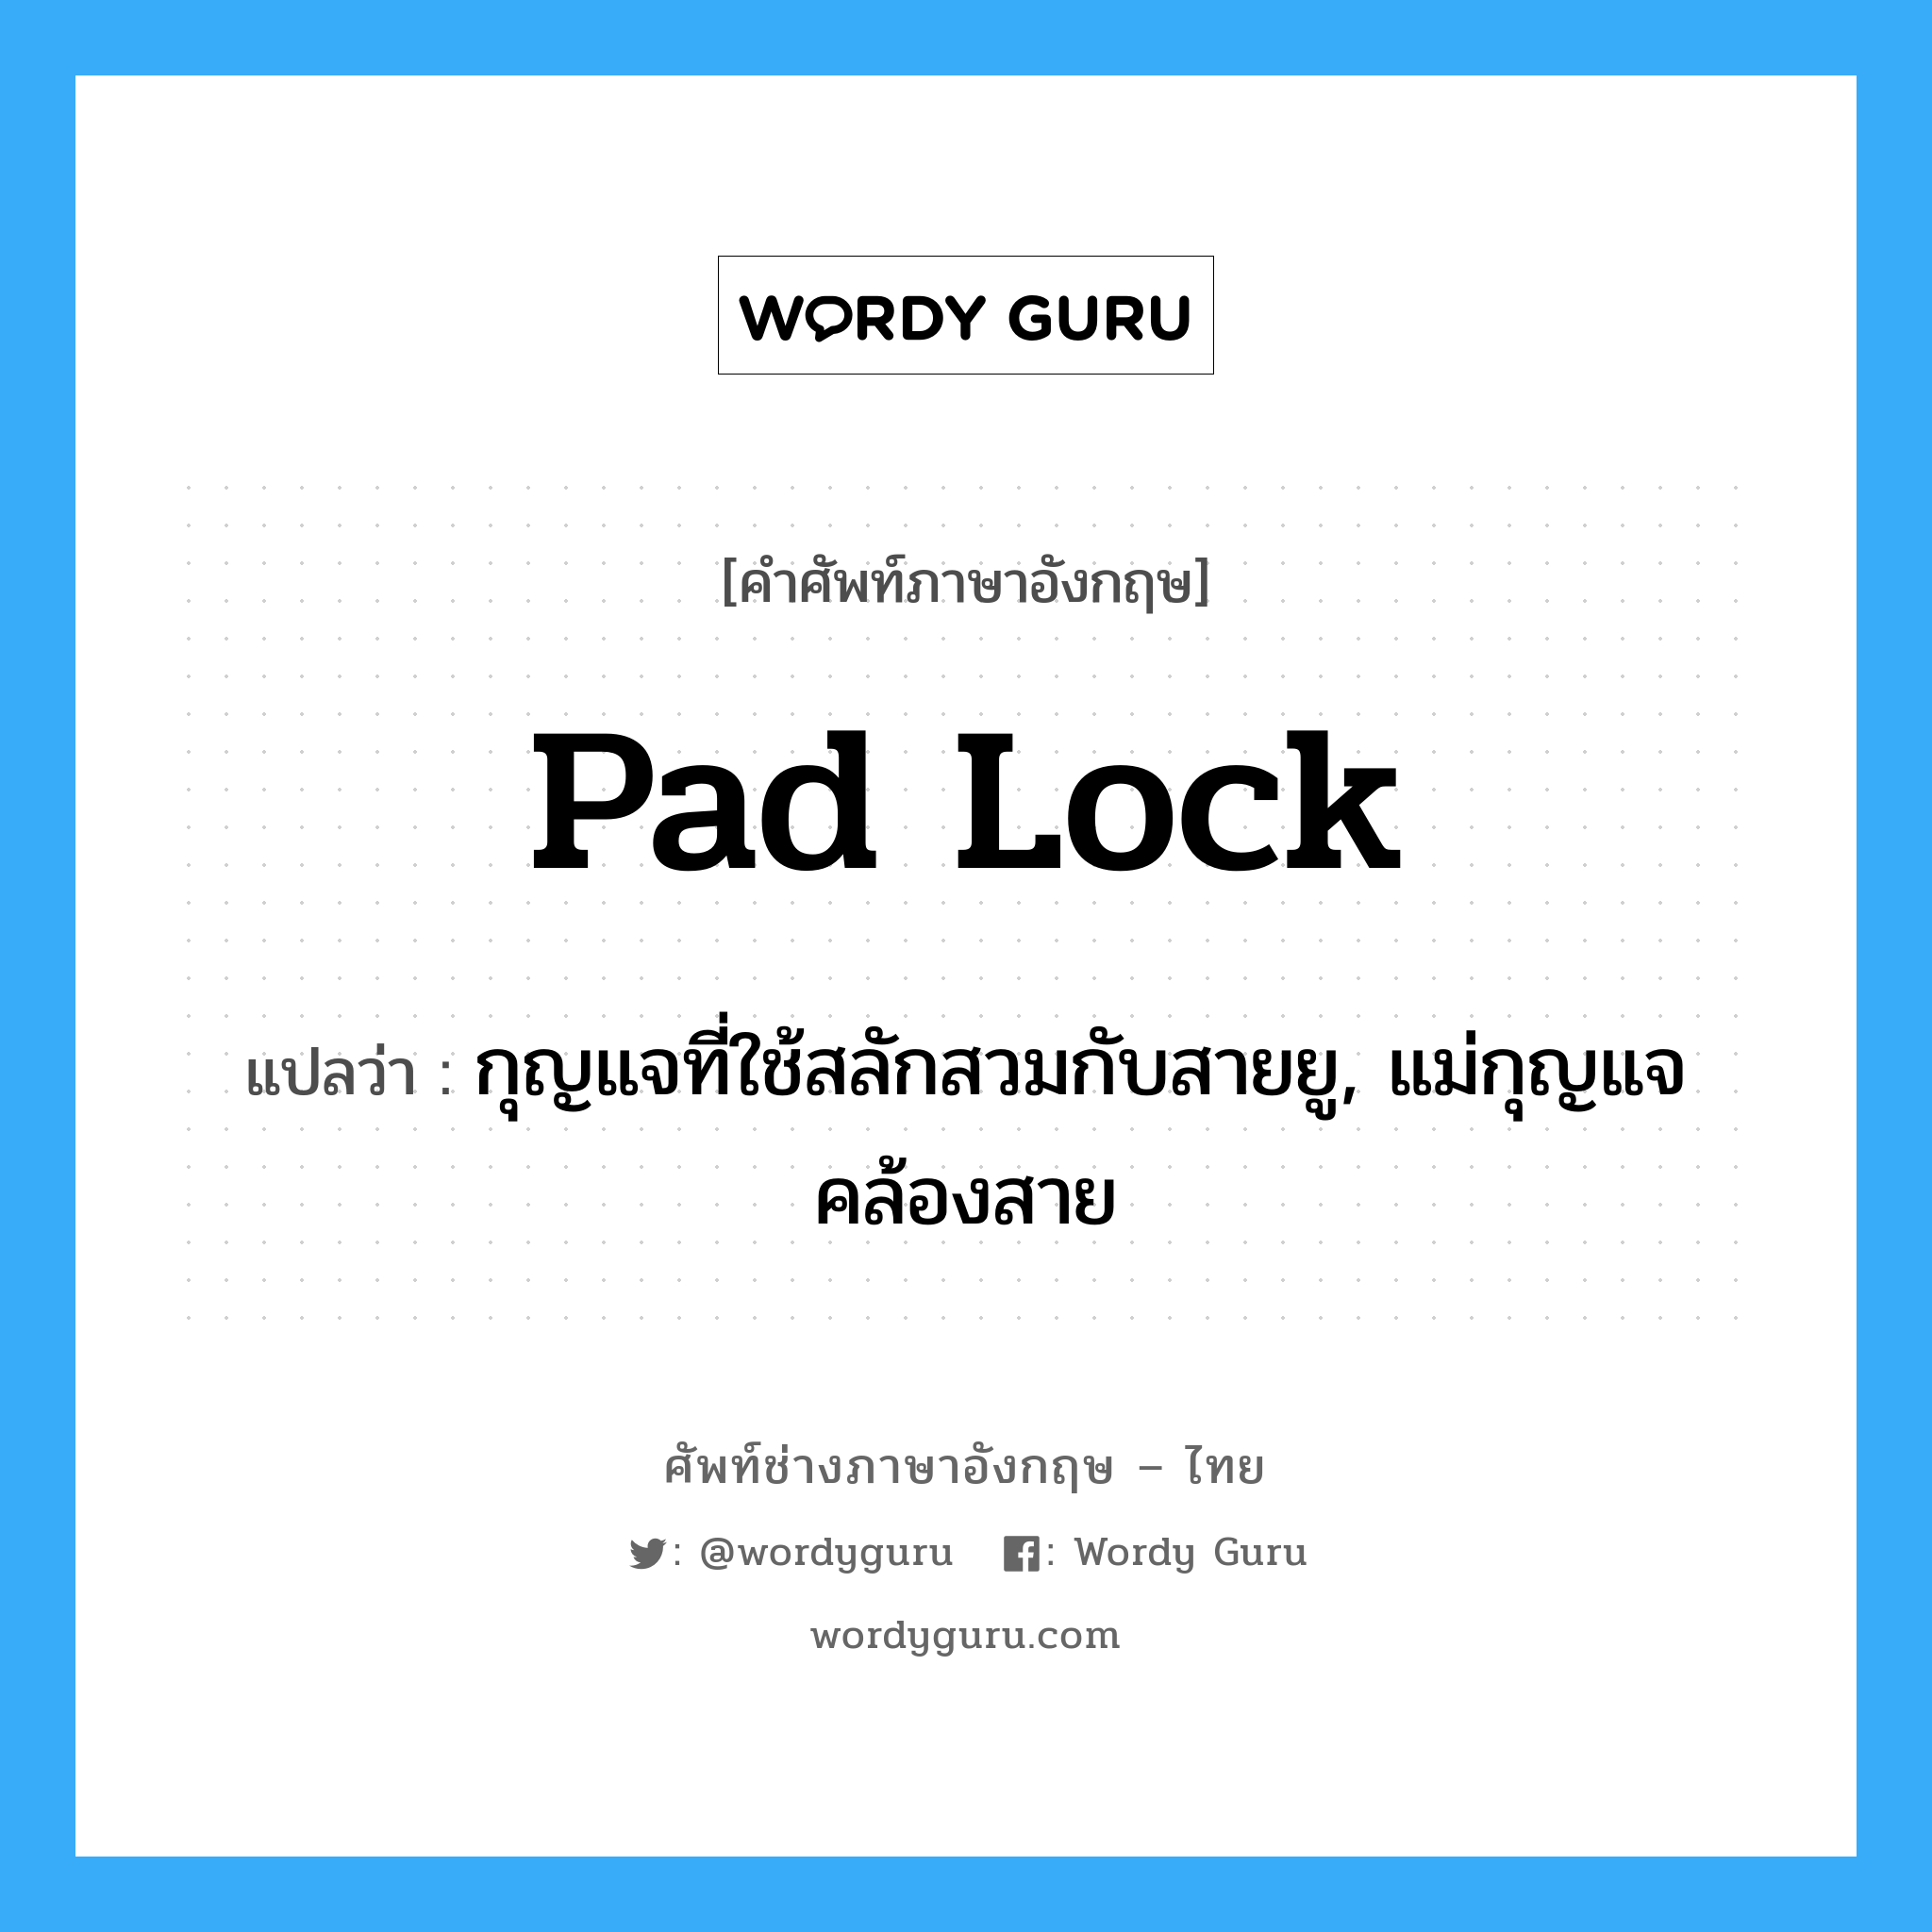 pad lock แปลว่า?, คำศัพท์ช่างภาษาอังกฤษ - ไทย pad lock คำศัพท์ภาษาอังกฤษ pad lock แปลว่า กุญแจที่ใช้สลักสวมกับสายยู, แม่กุญแจคล้องสาย